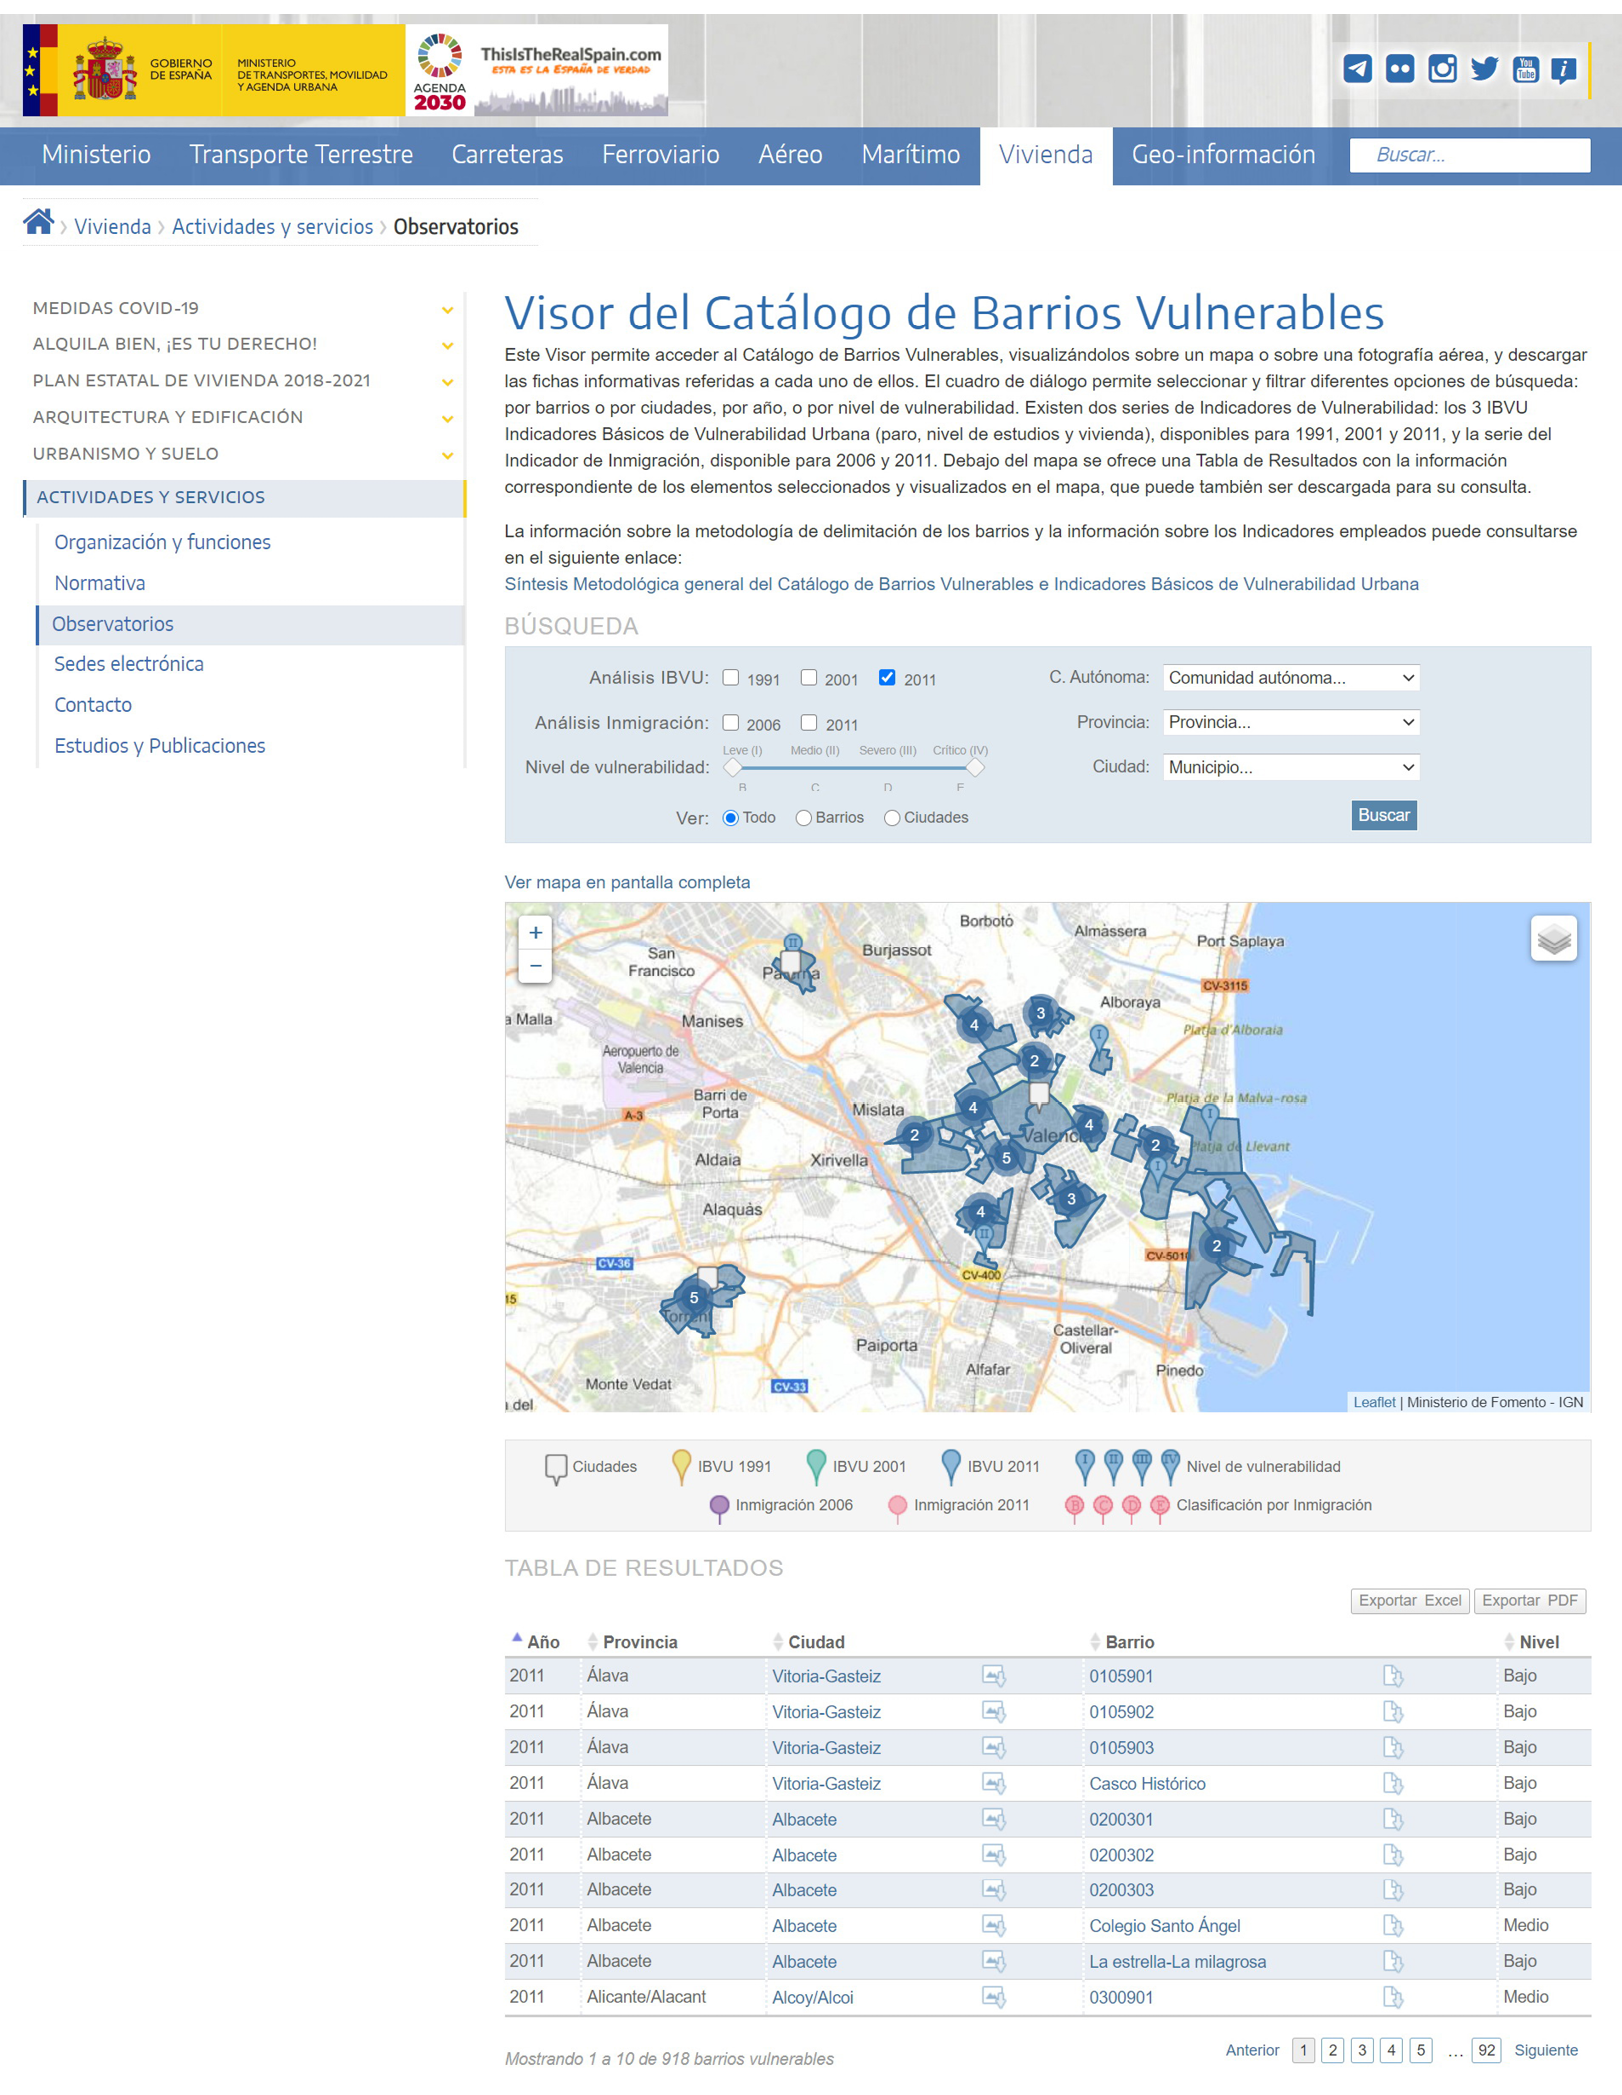 Fig. 13/ Visor del Catálogo de Barrios Vulnerables.